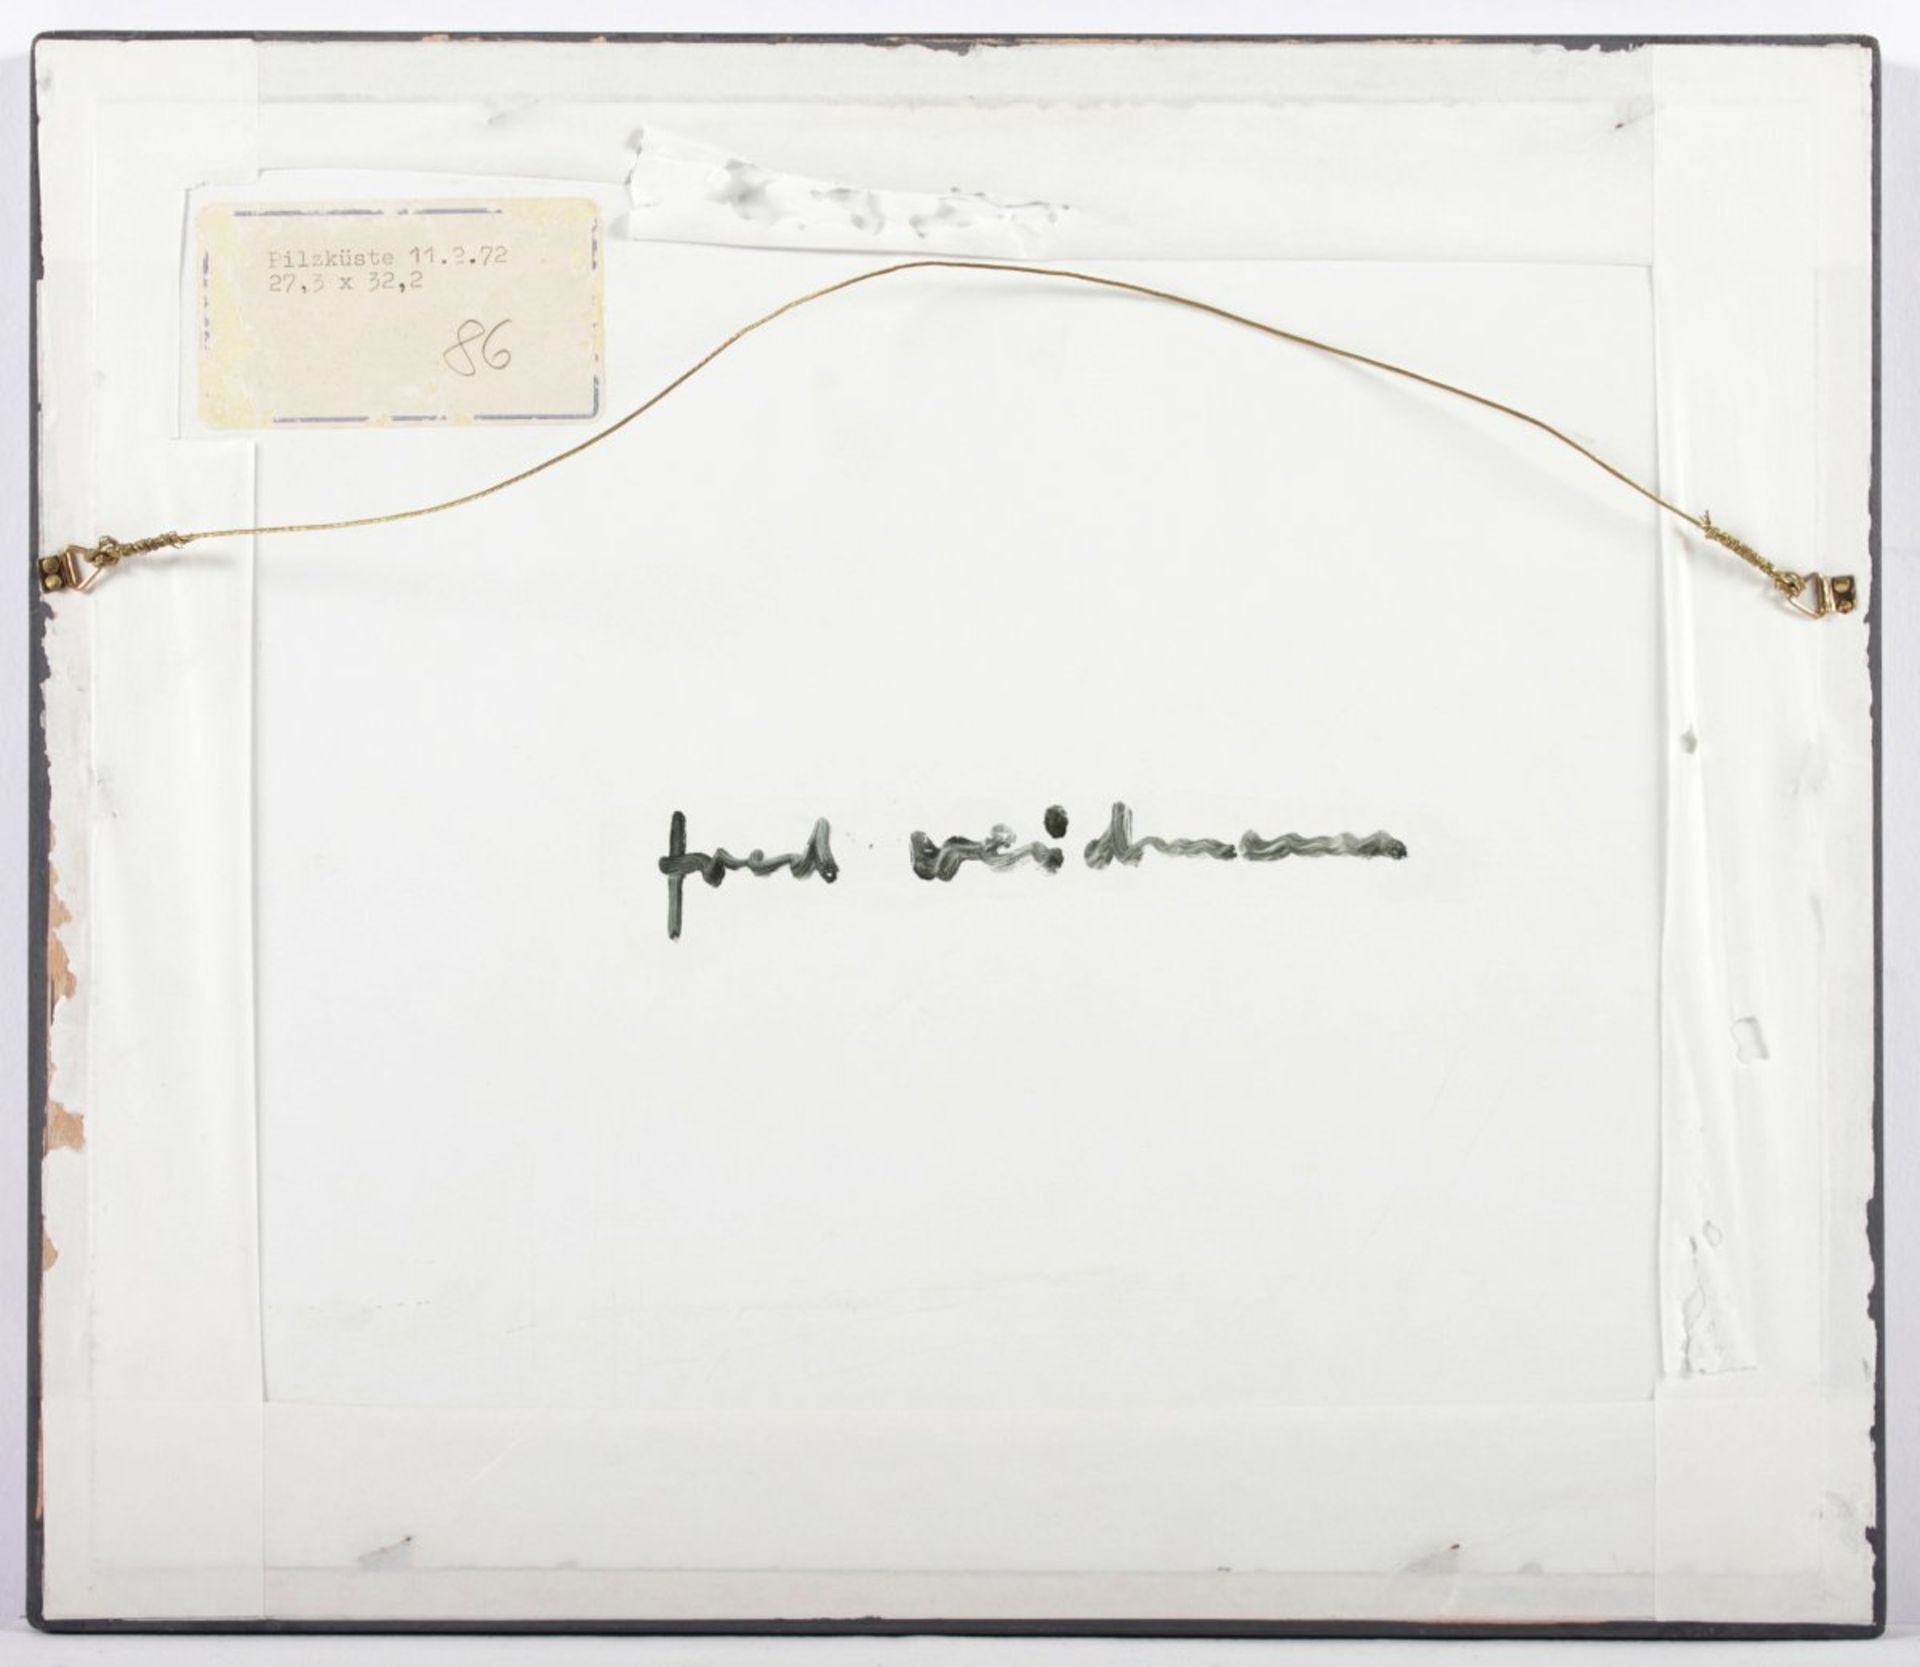 WEIDMANN, Fred, "Pilzküste", 27 x 32, unten rechts monogrammiert, verso signiert, 1972, R. - Image 3 of 3